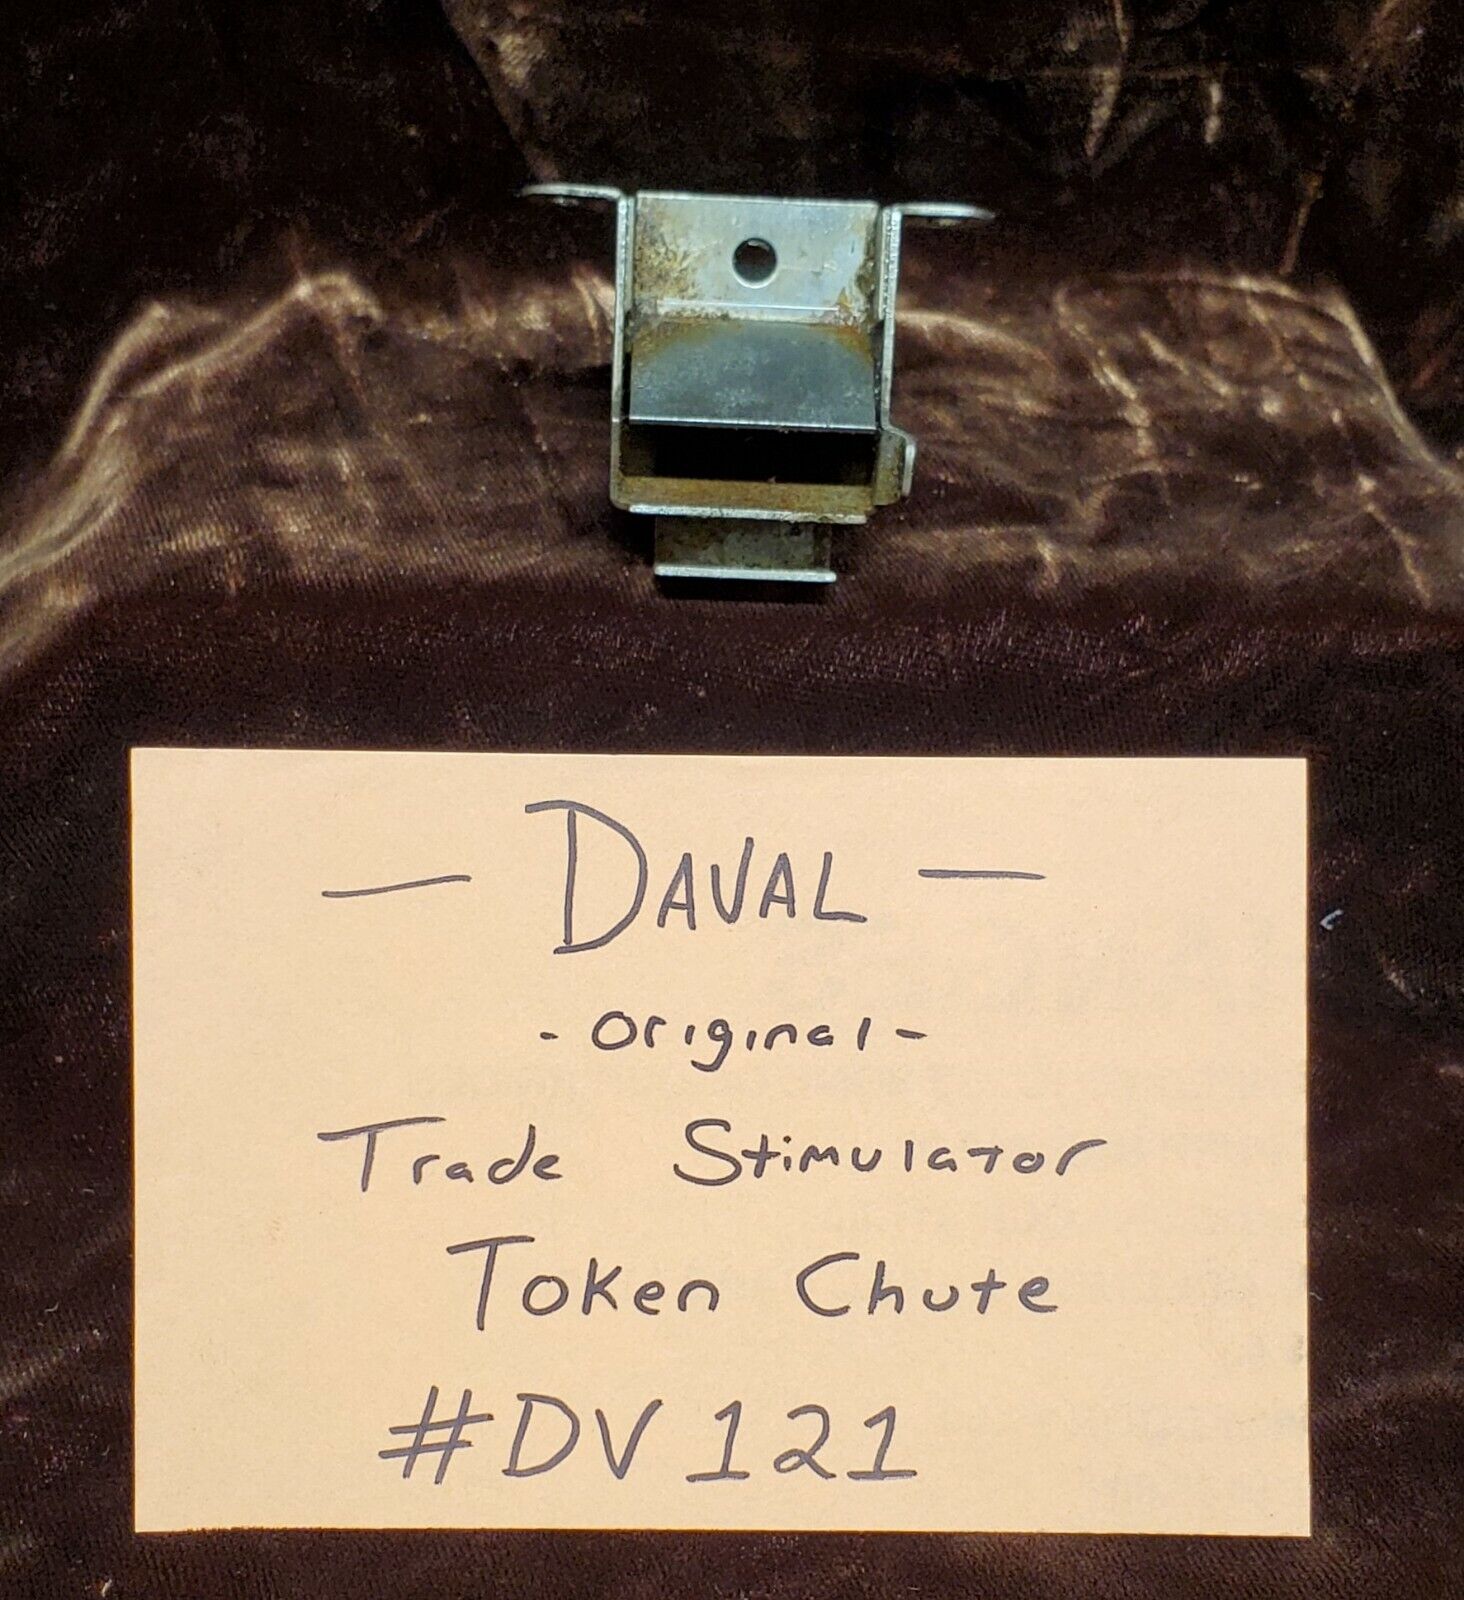 Original Daval Trade Stimulator Token Chute Original  #dv121